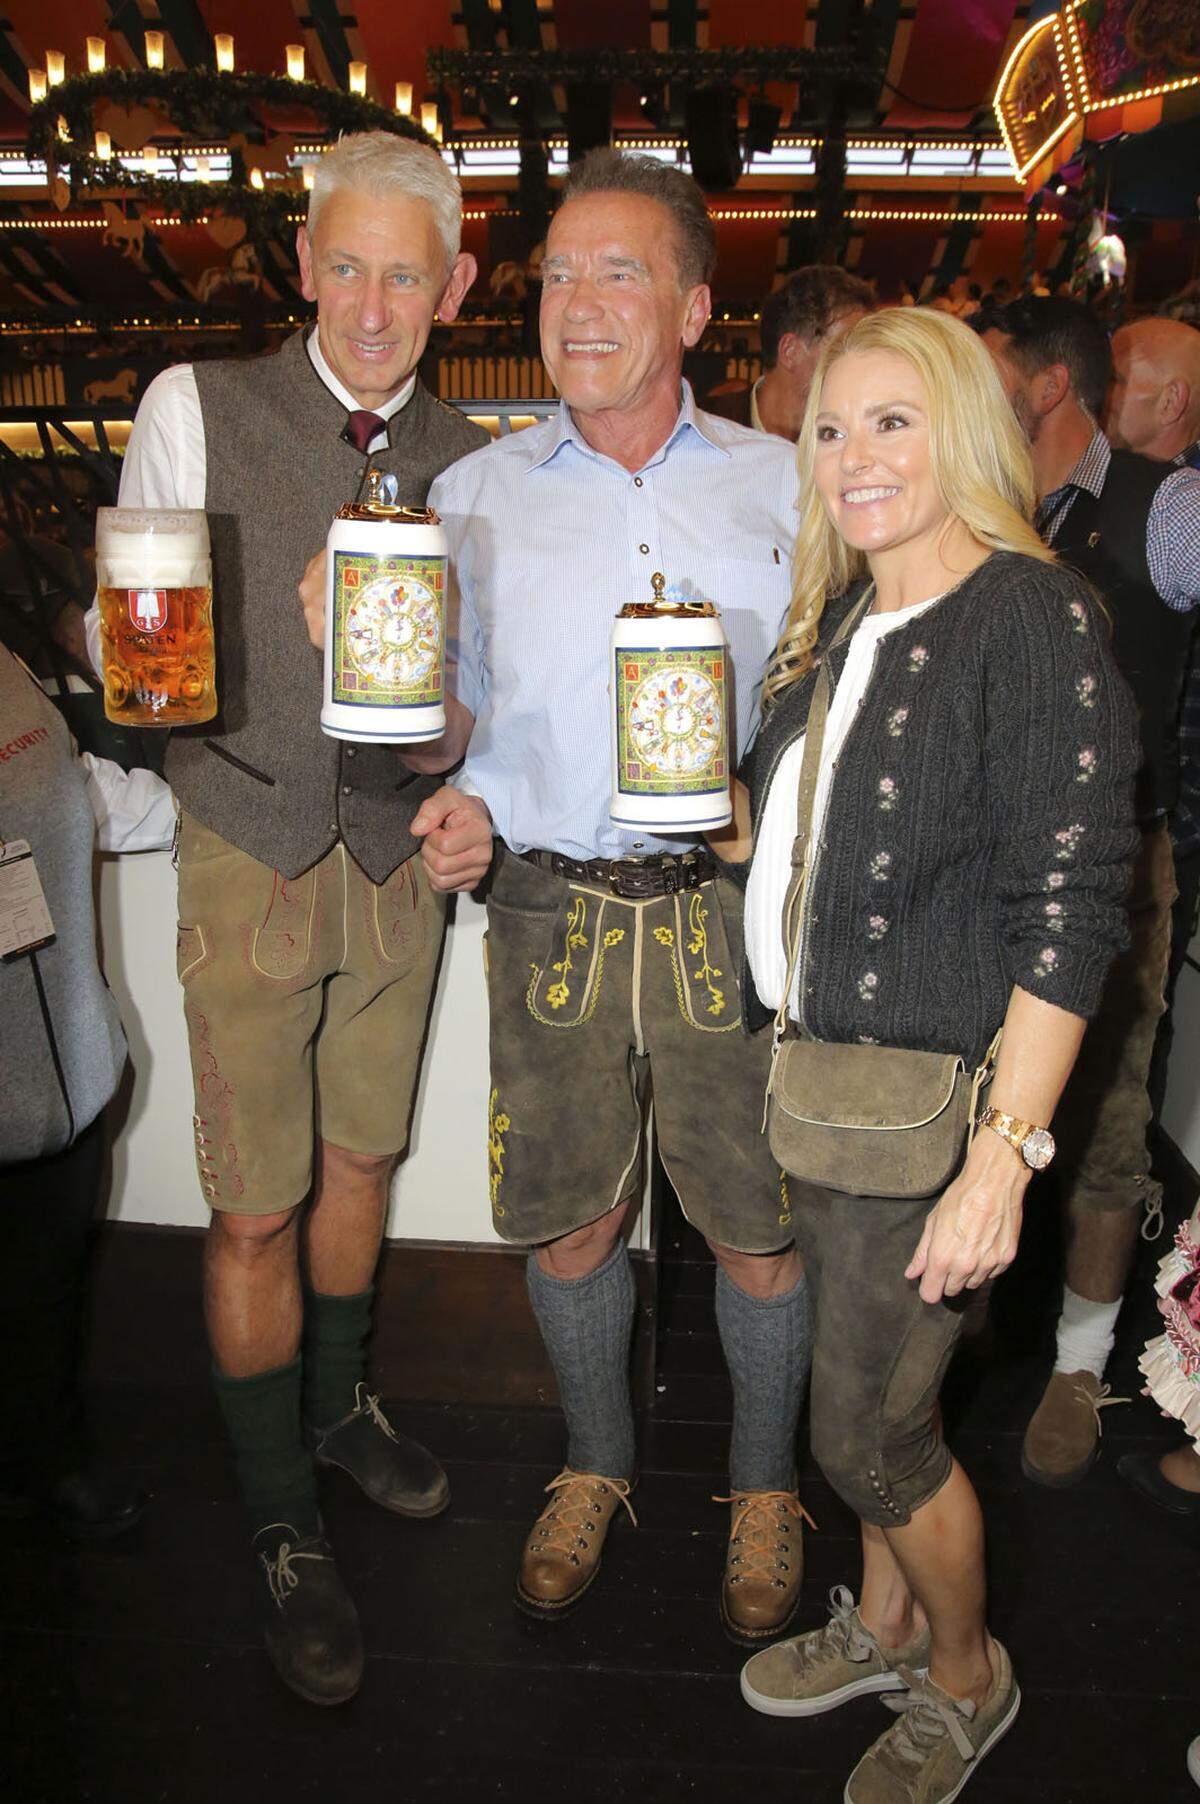 Stilecht mit kurzen Lederhosen und einem Bier in der Hand zeigte sich Arnold Schwarzenegger beim Oktoberfest in München im Marstall-Festzelt.